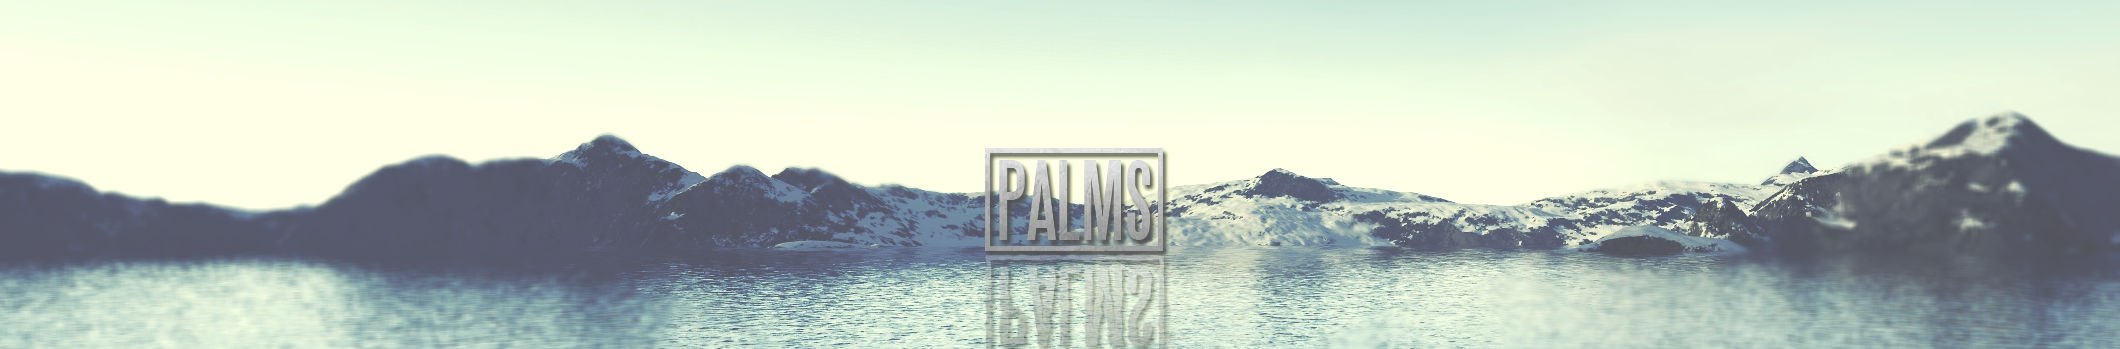 Palms BG (2013)